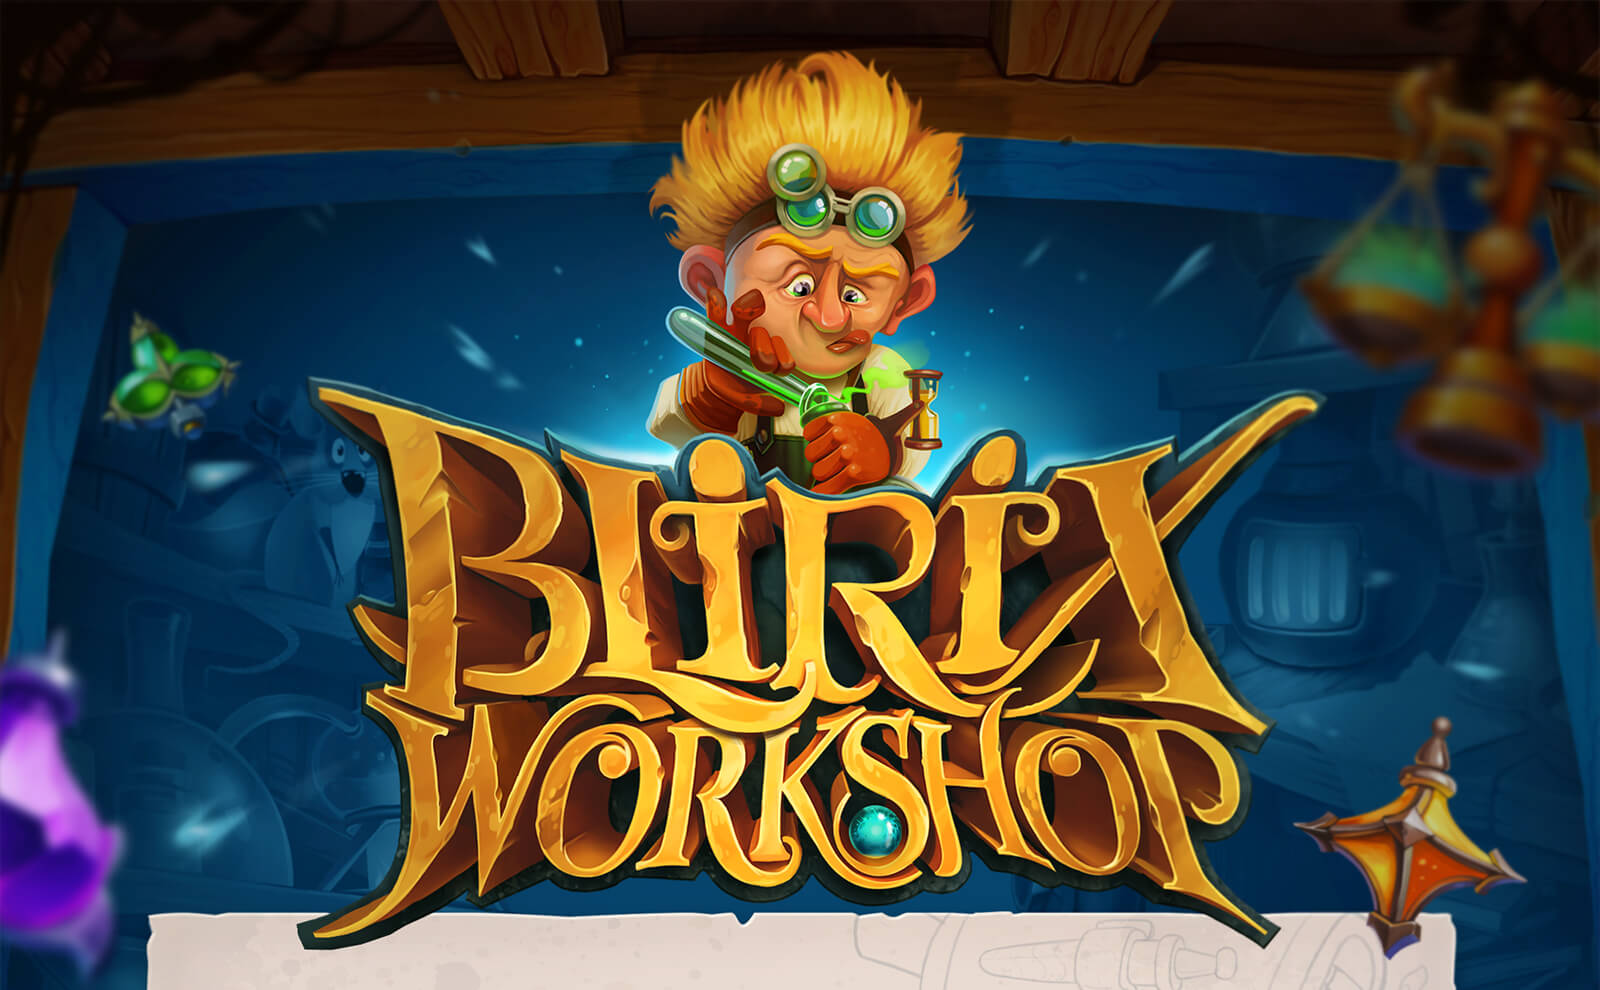 Blirix Workshop slot art